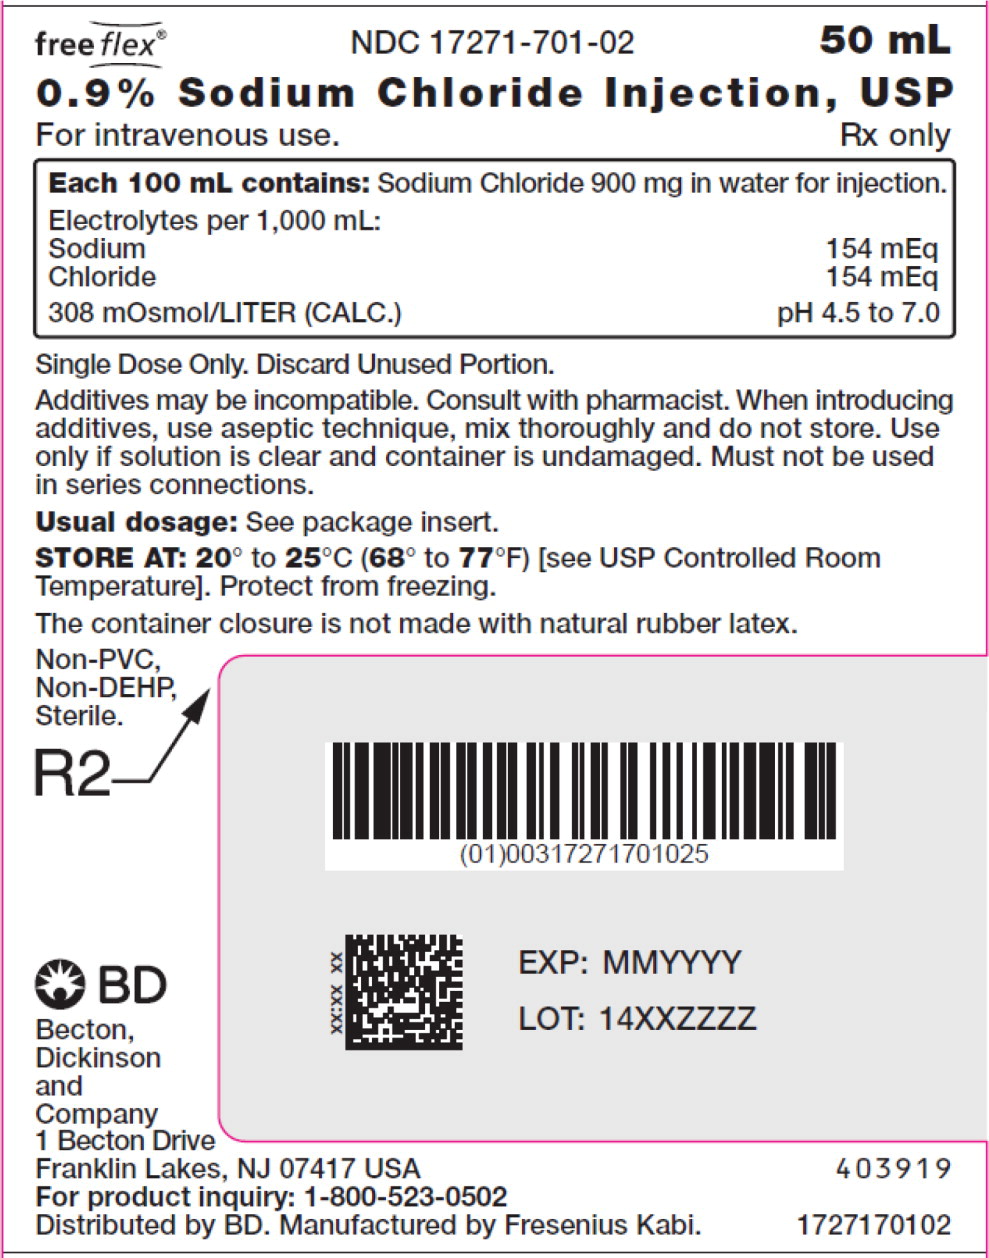 PACKAGE LABEL – PRINCIPAL DISPLAY PANEL – Sodium Chloride 50 mL Bag Label
